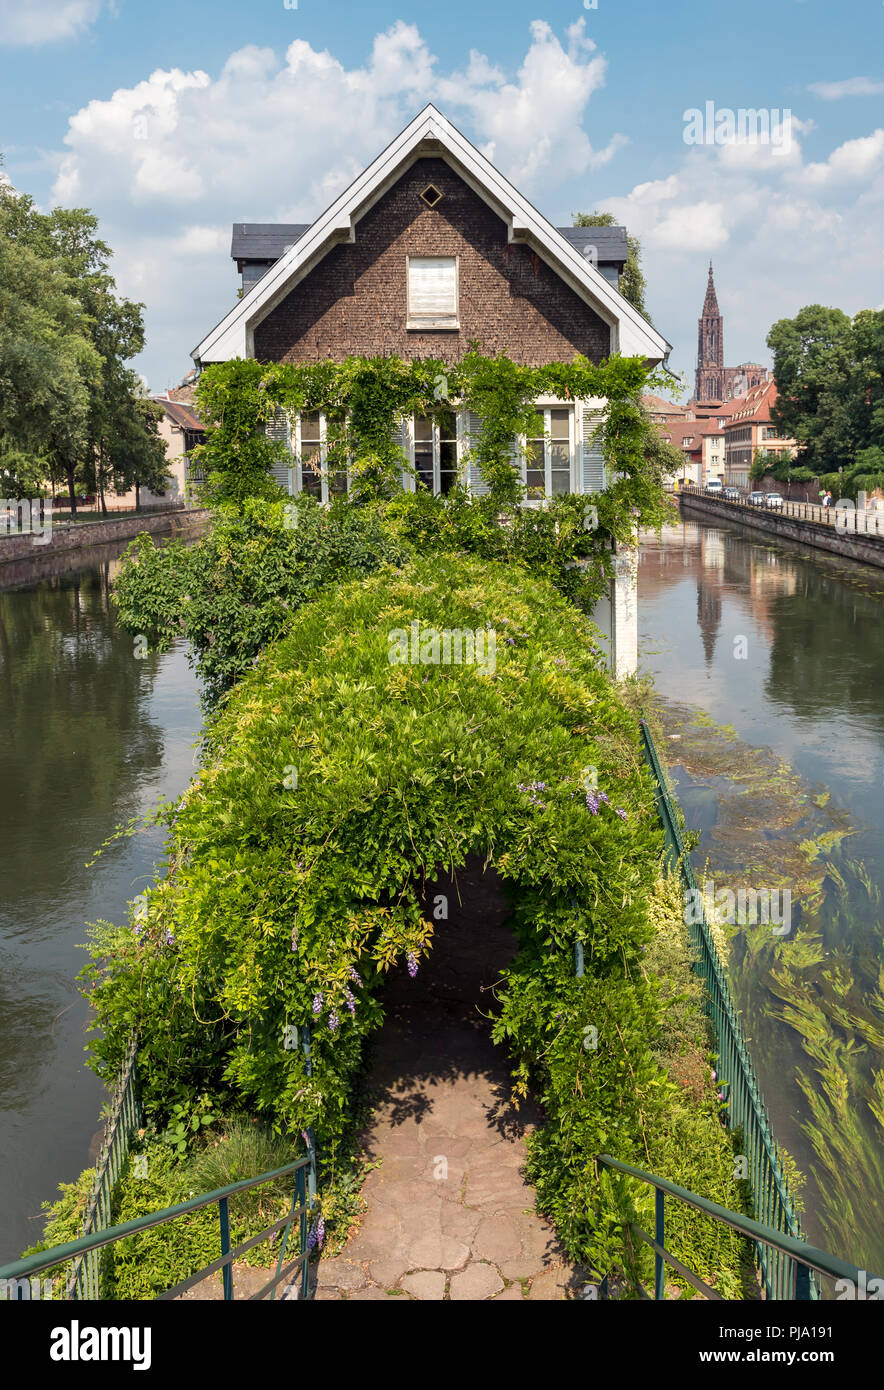 Maison des Ponts Couverts, Strasbourg, France Stock Photo - Alamy